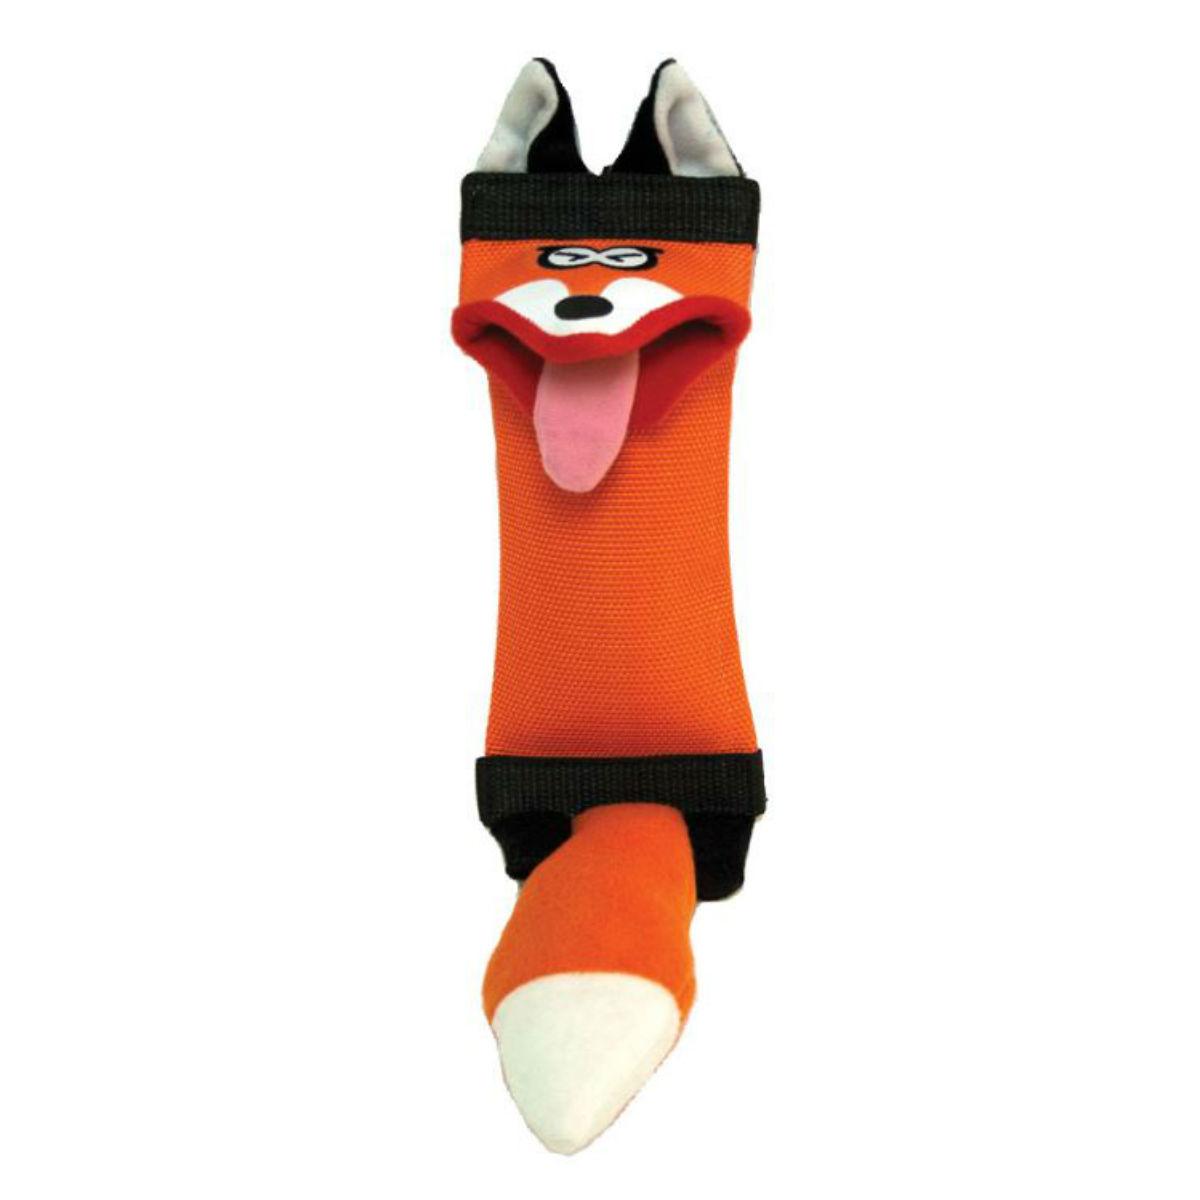 Hyper Pet Fire Hose Friends Dog Toy - Fox